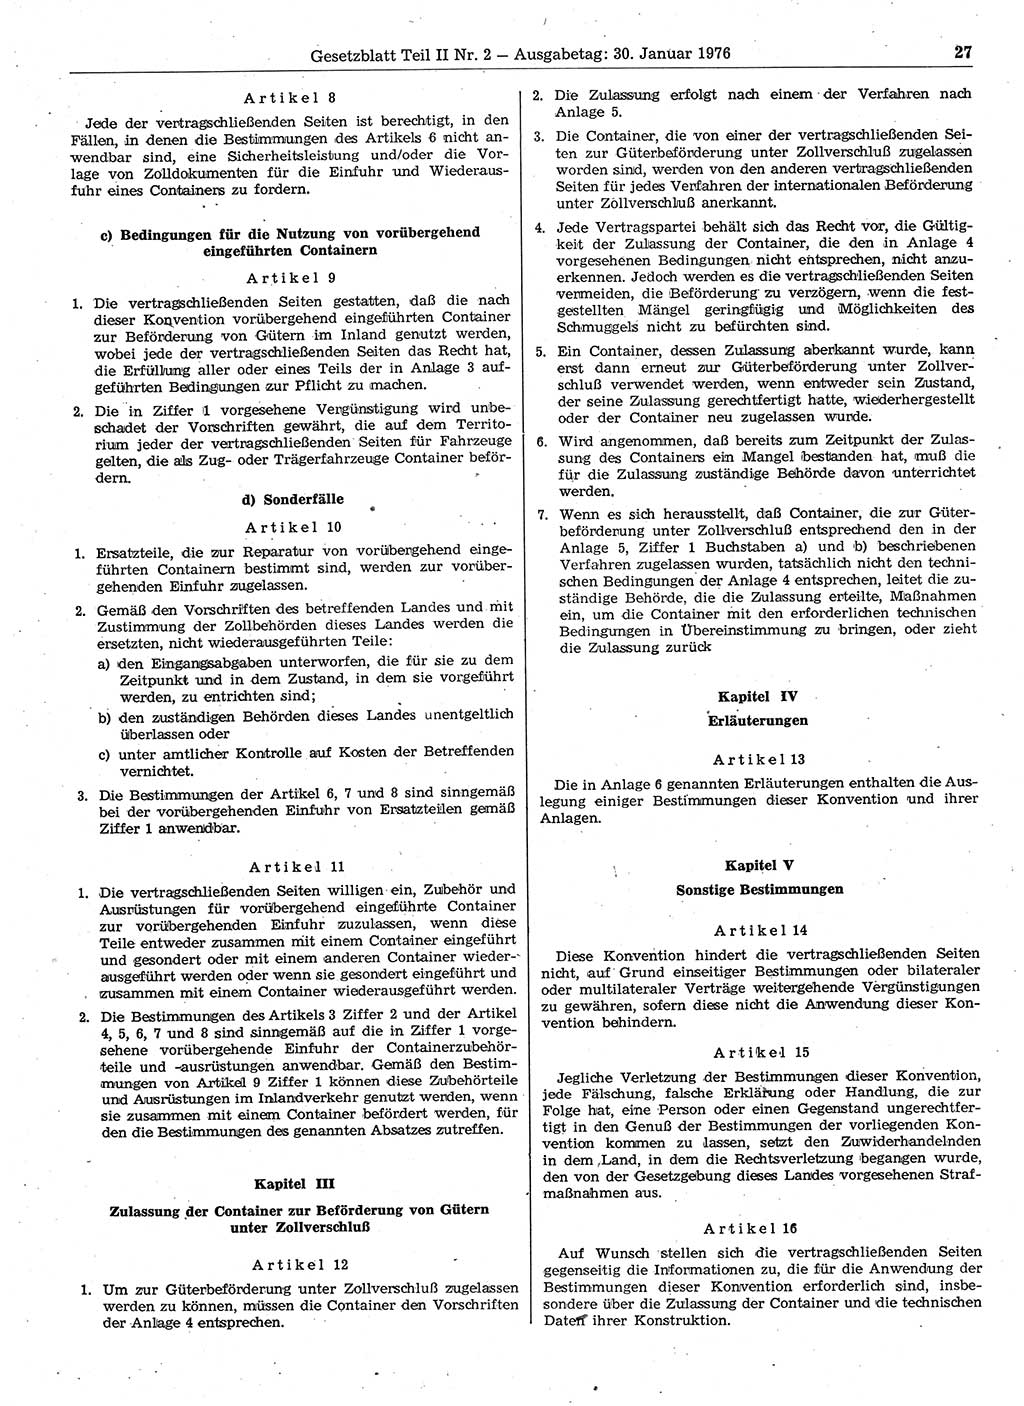 Gesetzblatt (GBl.) der Deutschen Demokratischen Republik (DDR) Teil ⅠⅠ 1976, Seite 27 (GBl. DDR ⅠⅠ 1976, S. 27)